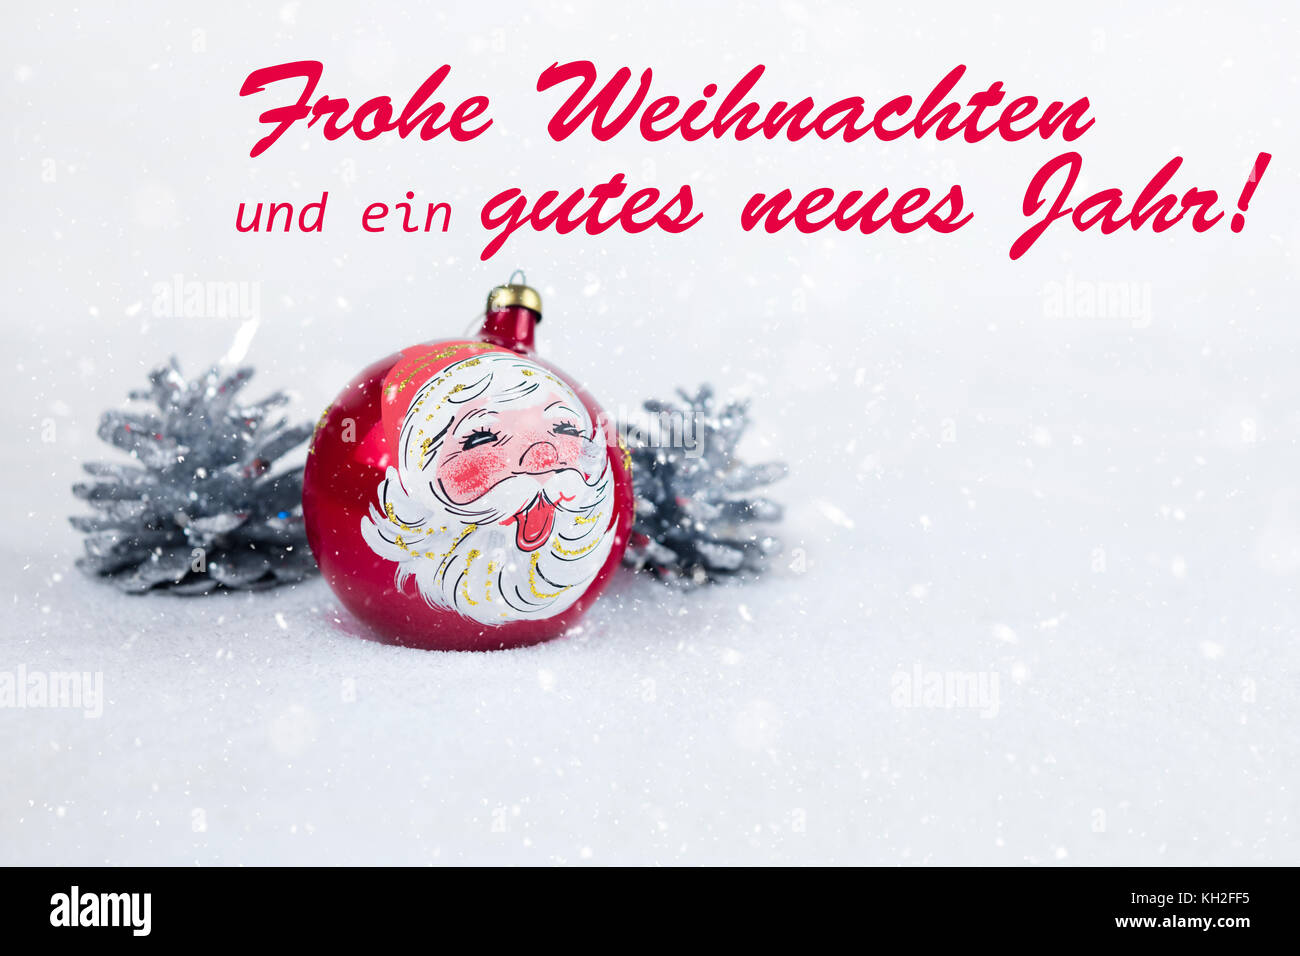 Groupe de bal de Noël coloré avec le dessin du père Noël et de pins avec texte en allemand "frohe weihnachten und ein gutes neues jahr' dans la neige blanche Banque D'Images